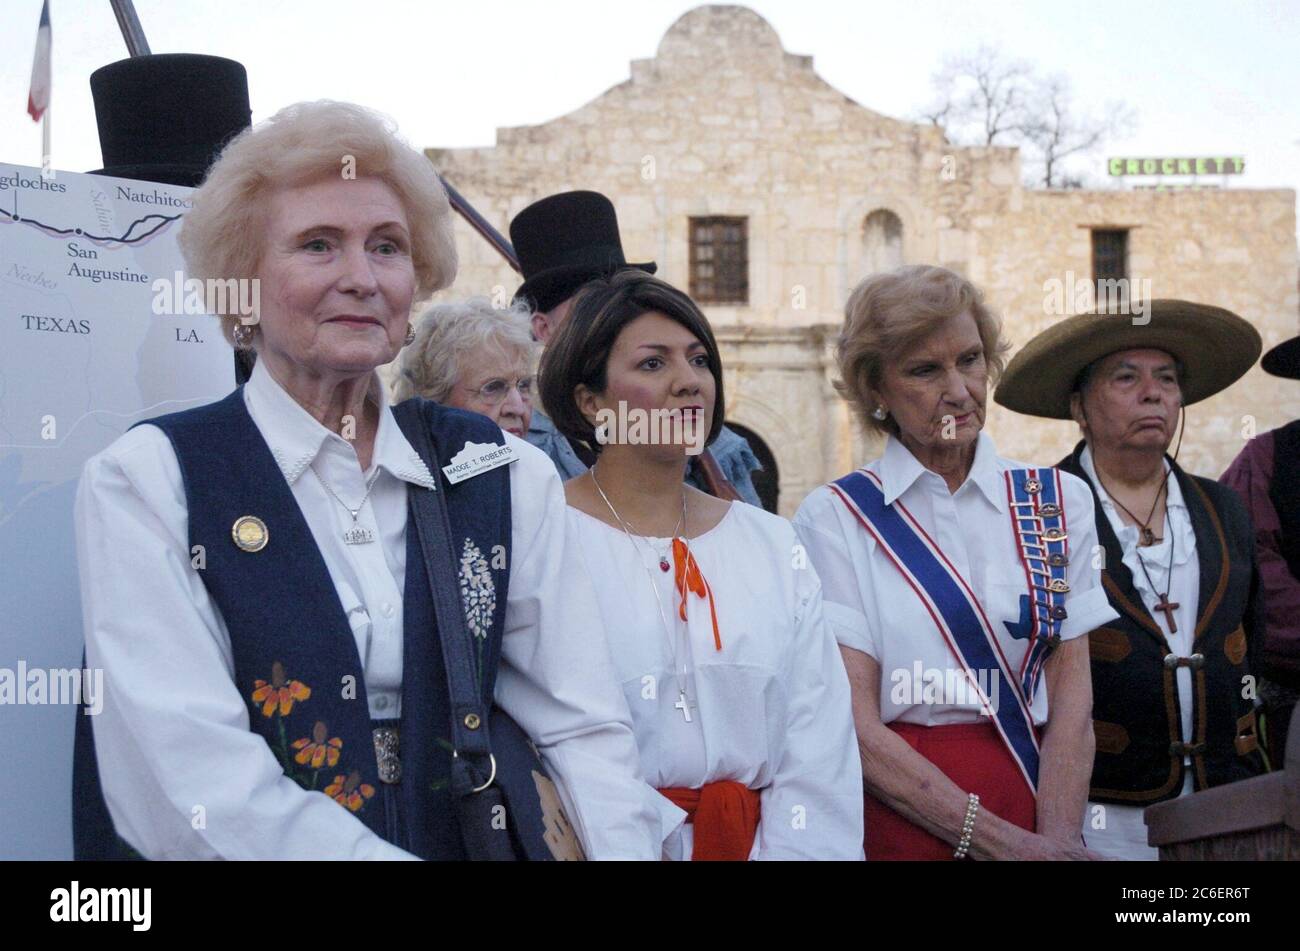 San Antonio, Texas, USA, März 22 2005: Mitglieder der Töchter der Republik Texas, Hüter des Alamo-Schreins im Alamo, hören einem Redner vor dem Alamo zu. ©Bob Daemmrich Stockfoto